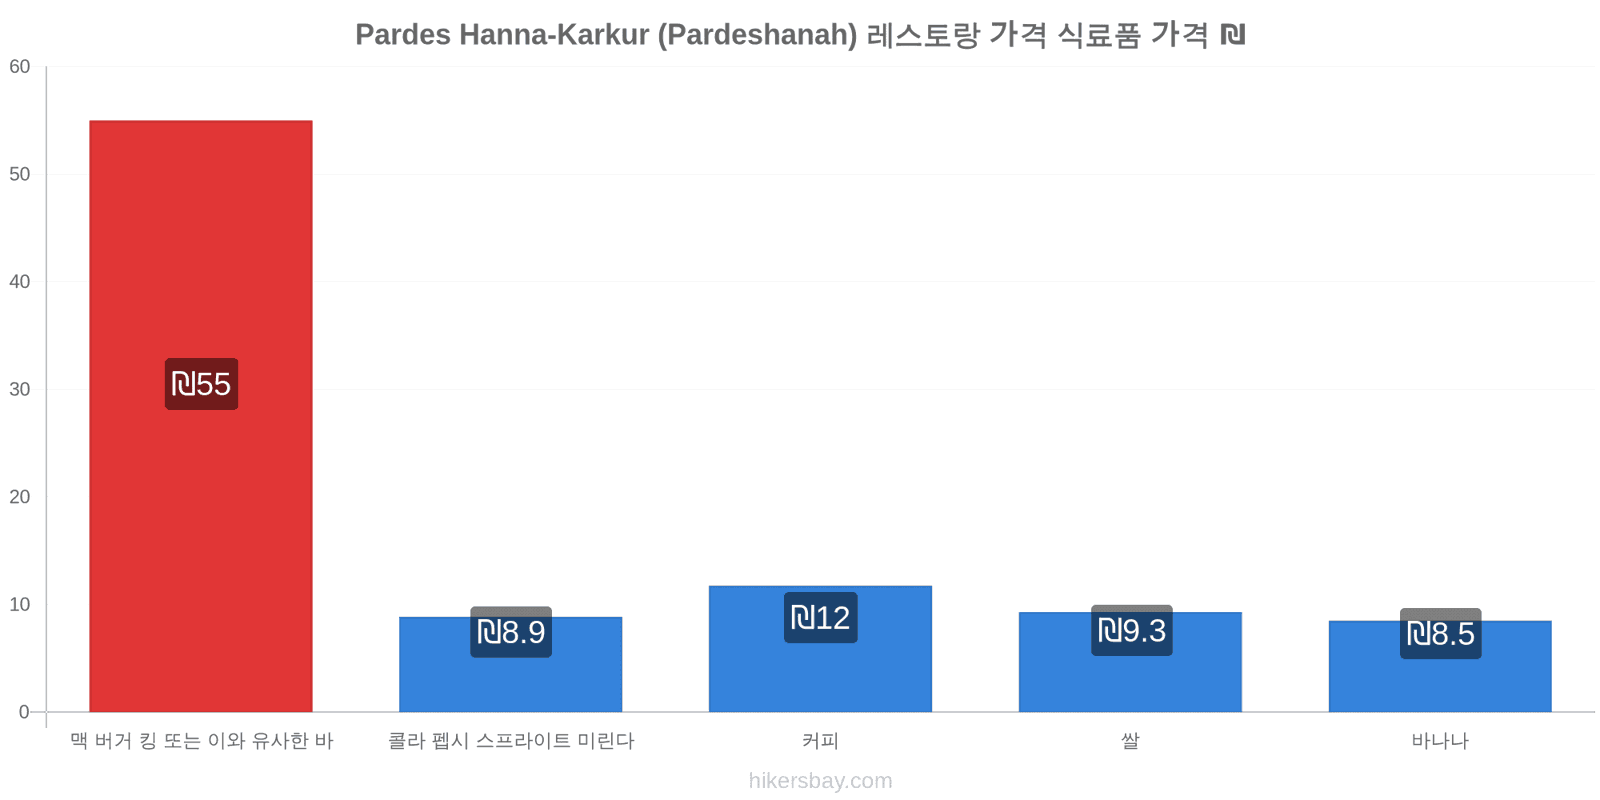 Pardes Hanna-Karkur (Pardeshanah) 가격 변동 hikersbay.com